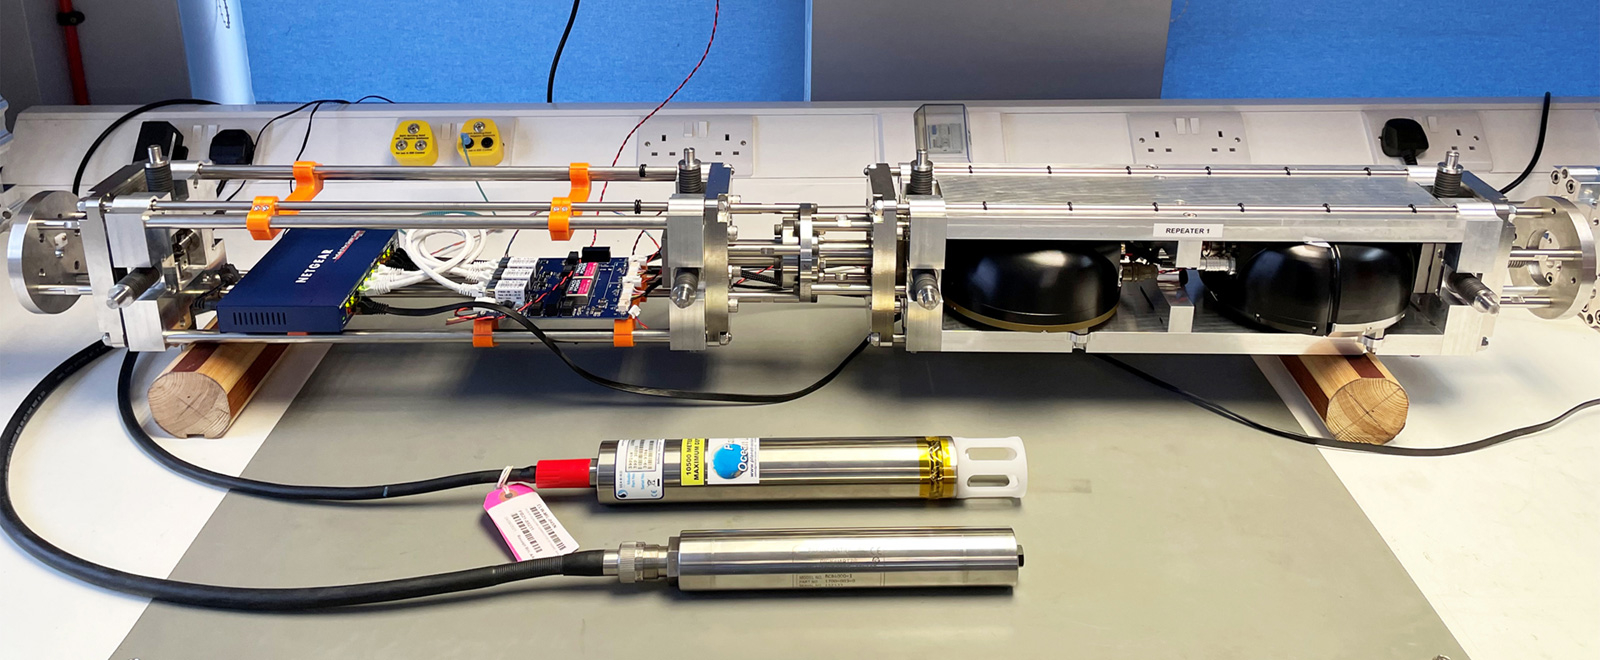 Güralp проложила в водах Италии экспериментальный 21-км оптоволоконный кабель SMART для мониторинга сейсмической активности